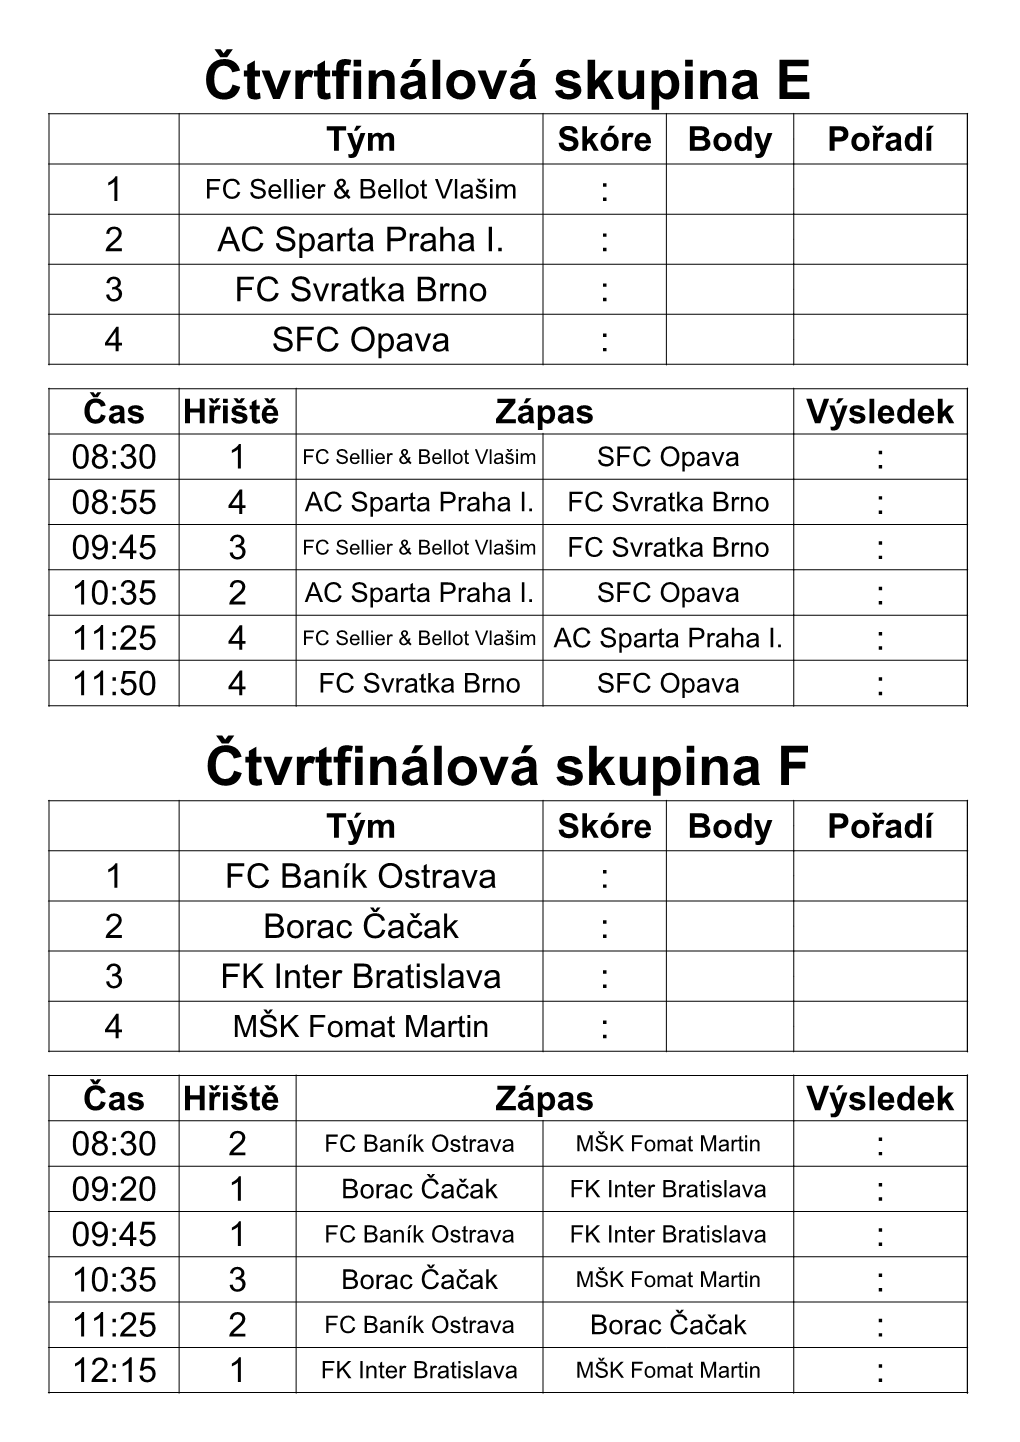 Čtvrtfinálová Skupina F Tým Skóre Body Pořadí 1 FC Baník Ostrava : 2 Borac Čačak : 3 FK Inter Bratislava : 4 MŠK Fomat Martin